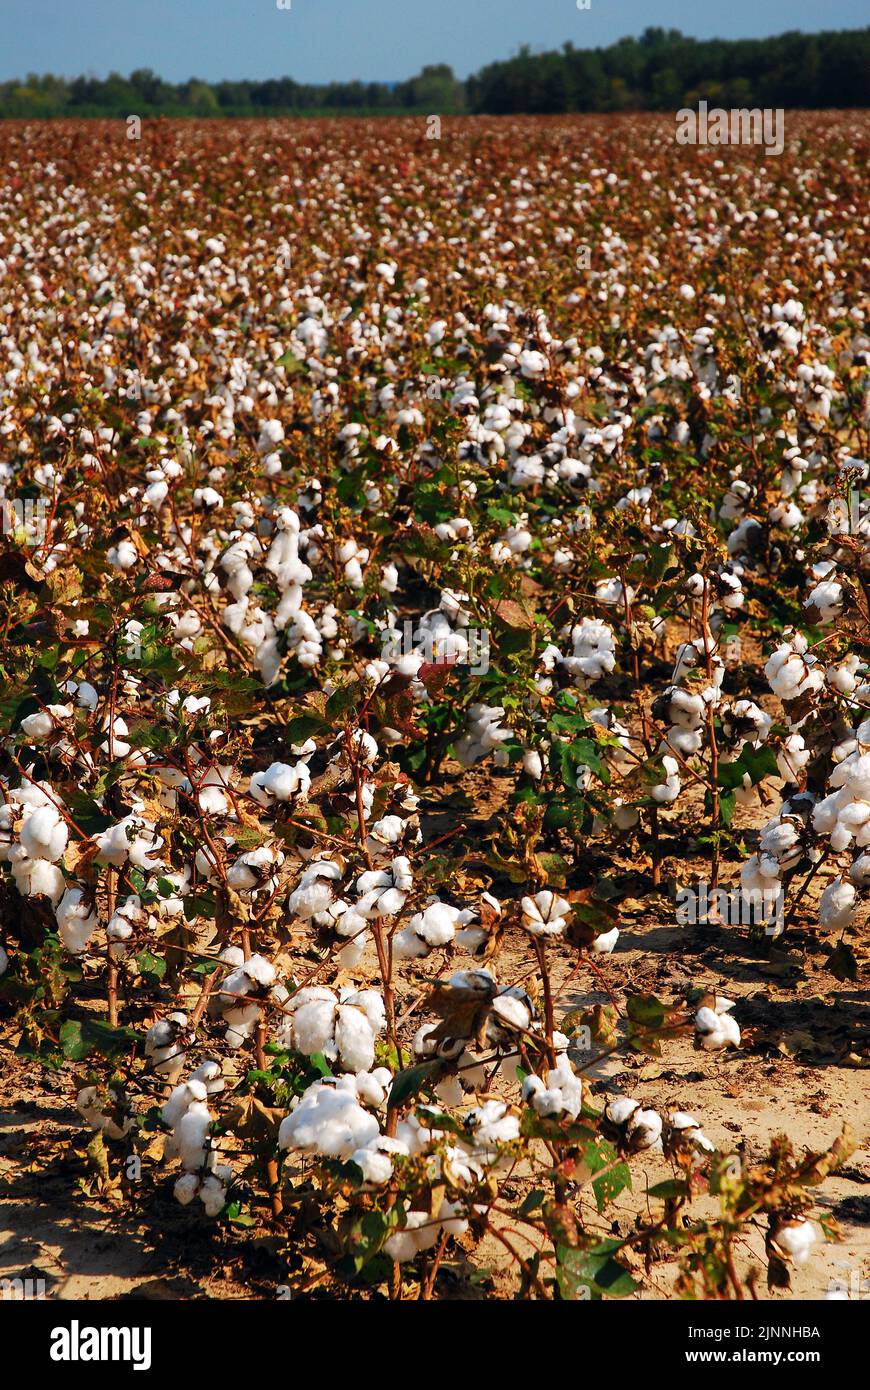 Les choux blancs du sommet des plants de coton sont visibles sur une plantation dans le sud des États-Unis Banque D'Images